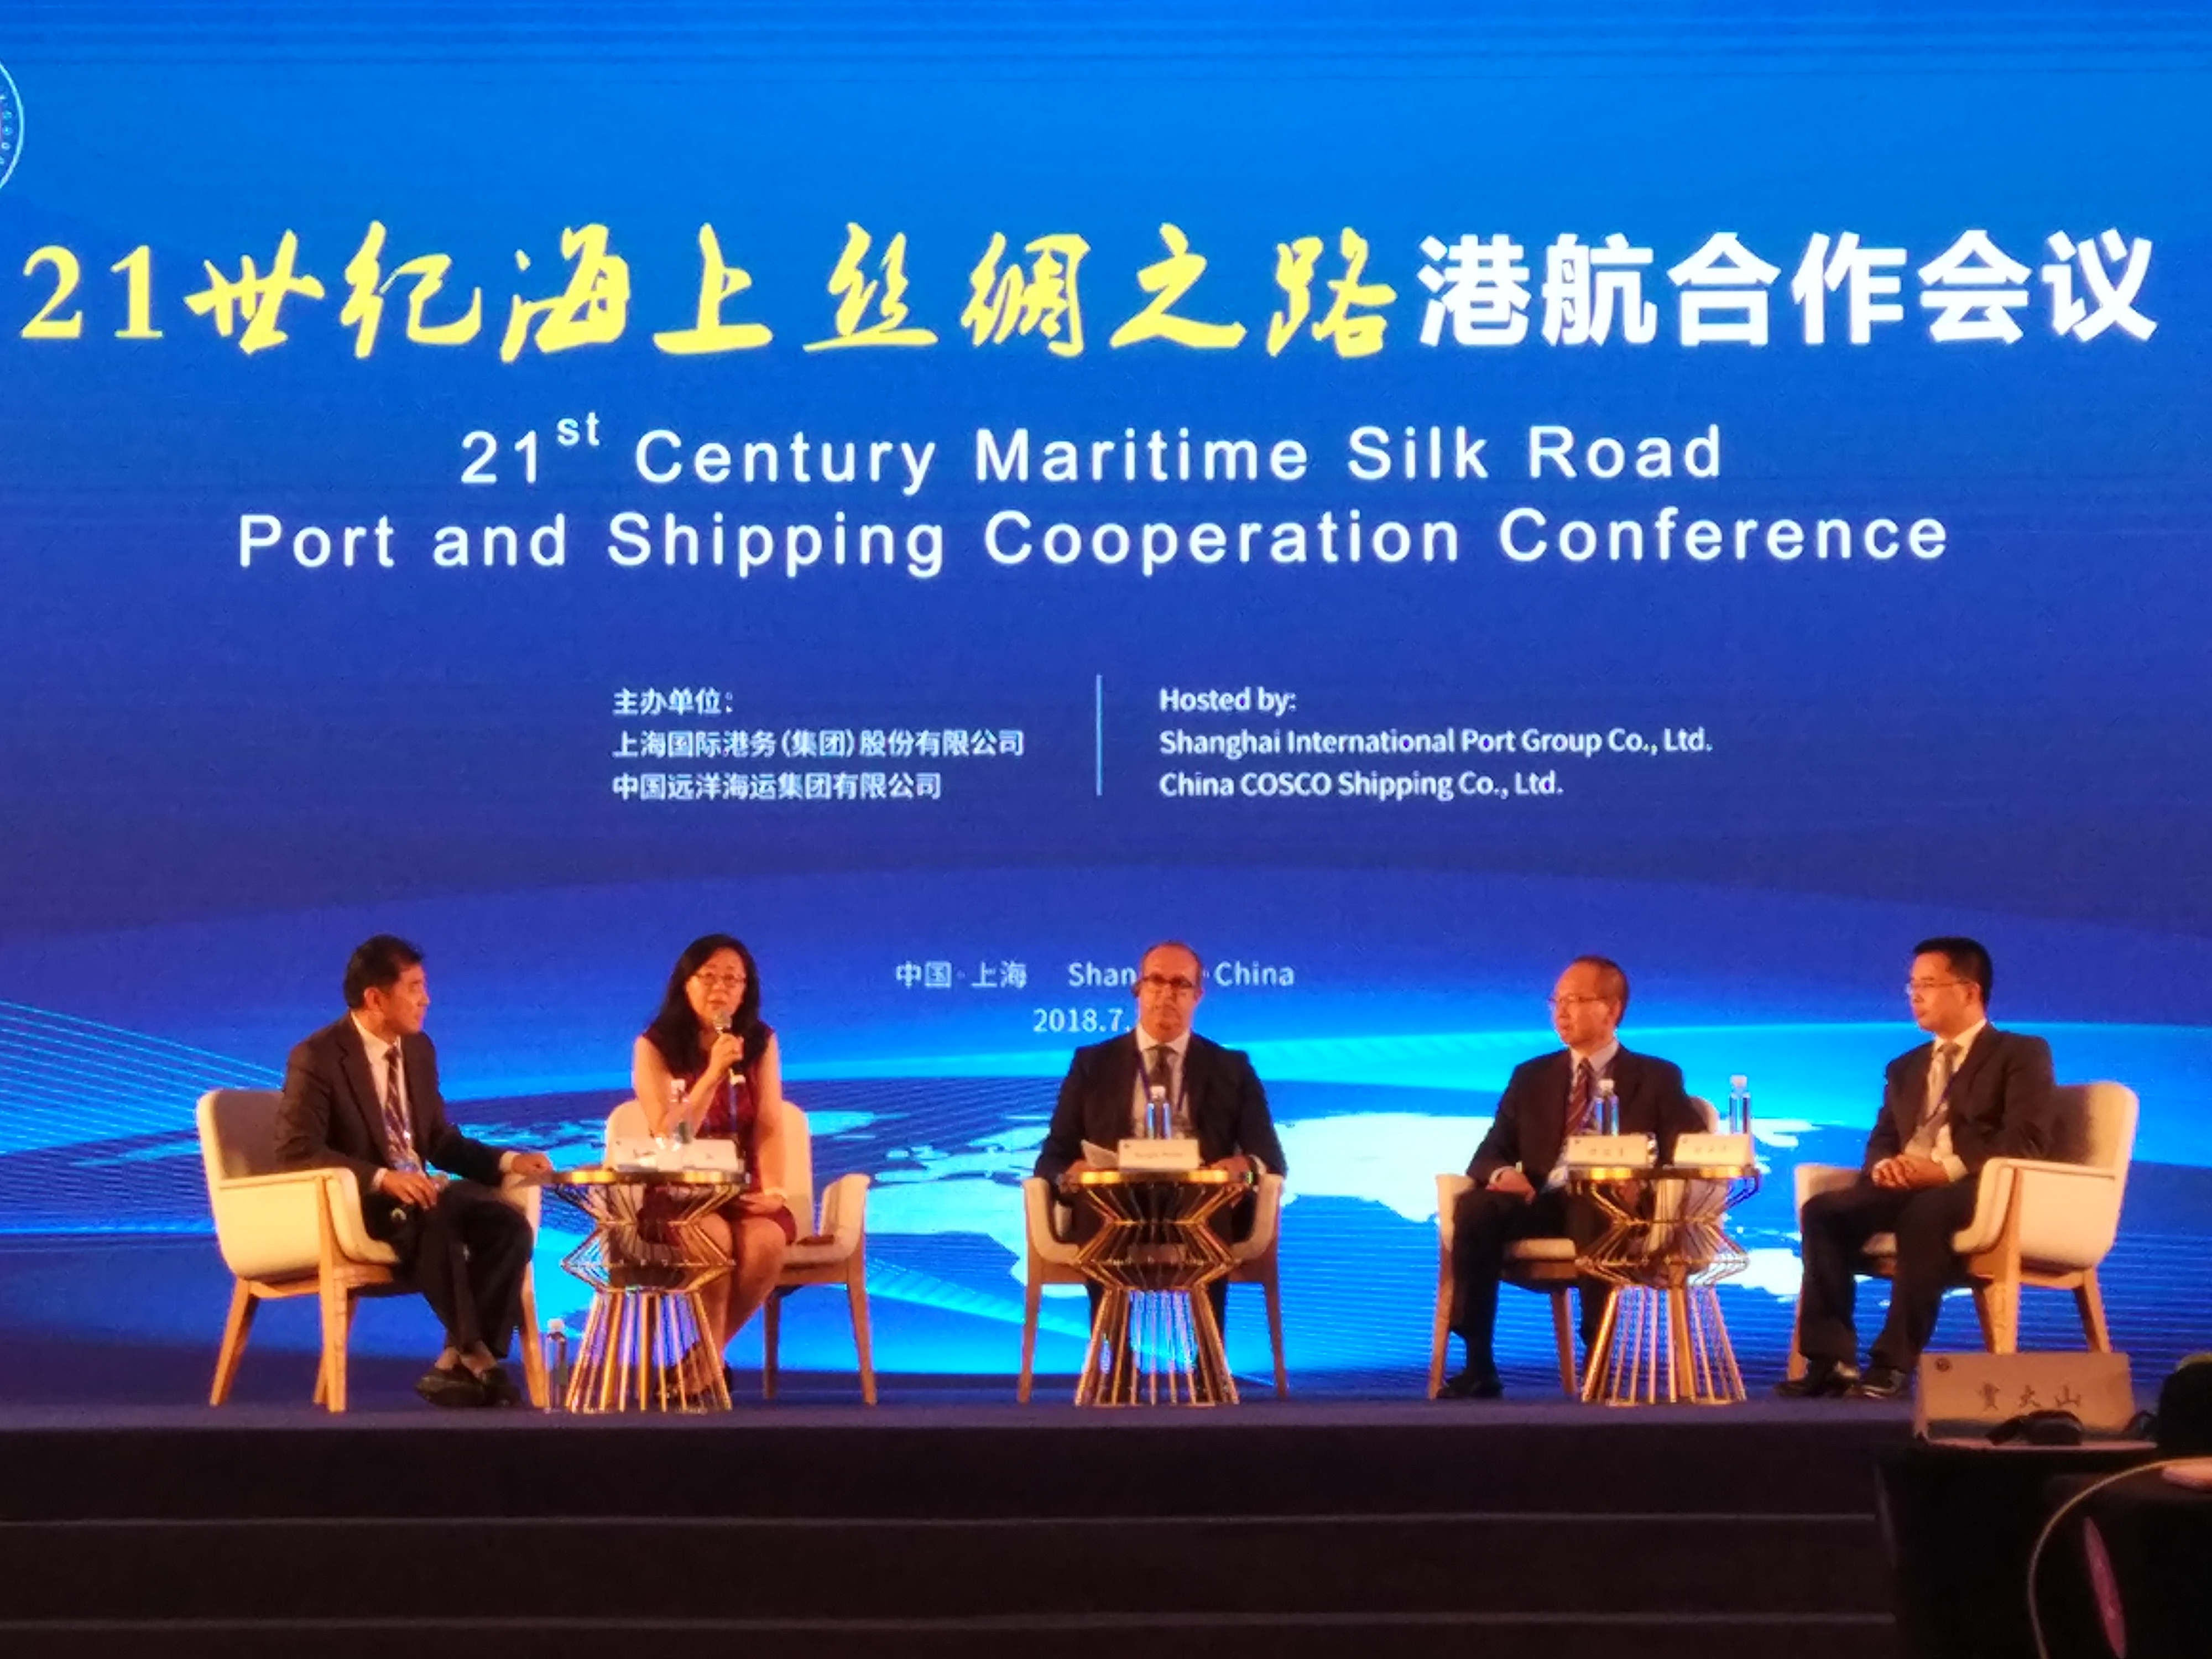 “21世纪海上丝绸之路”港航合作会议：构建长期稳定、平等互利、合作共赢的港航战略伙